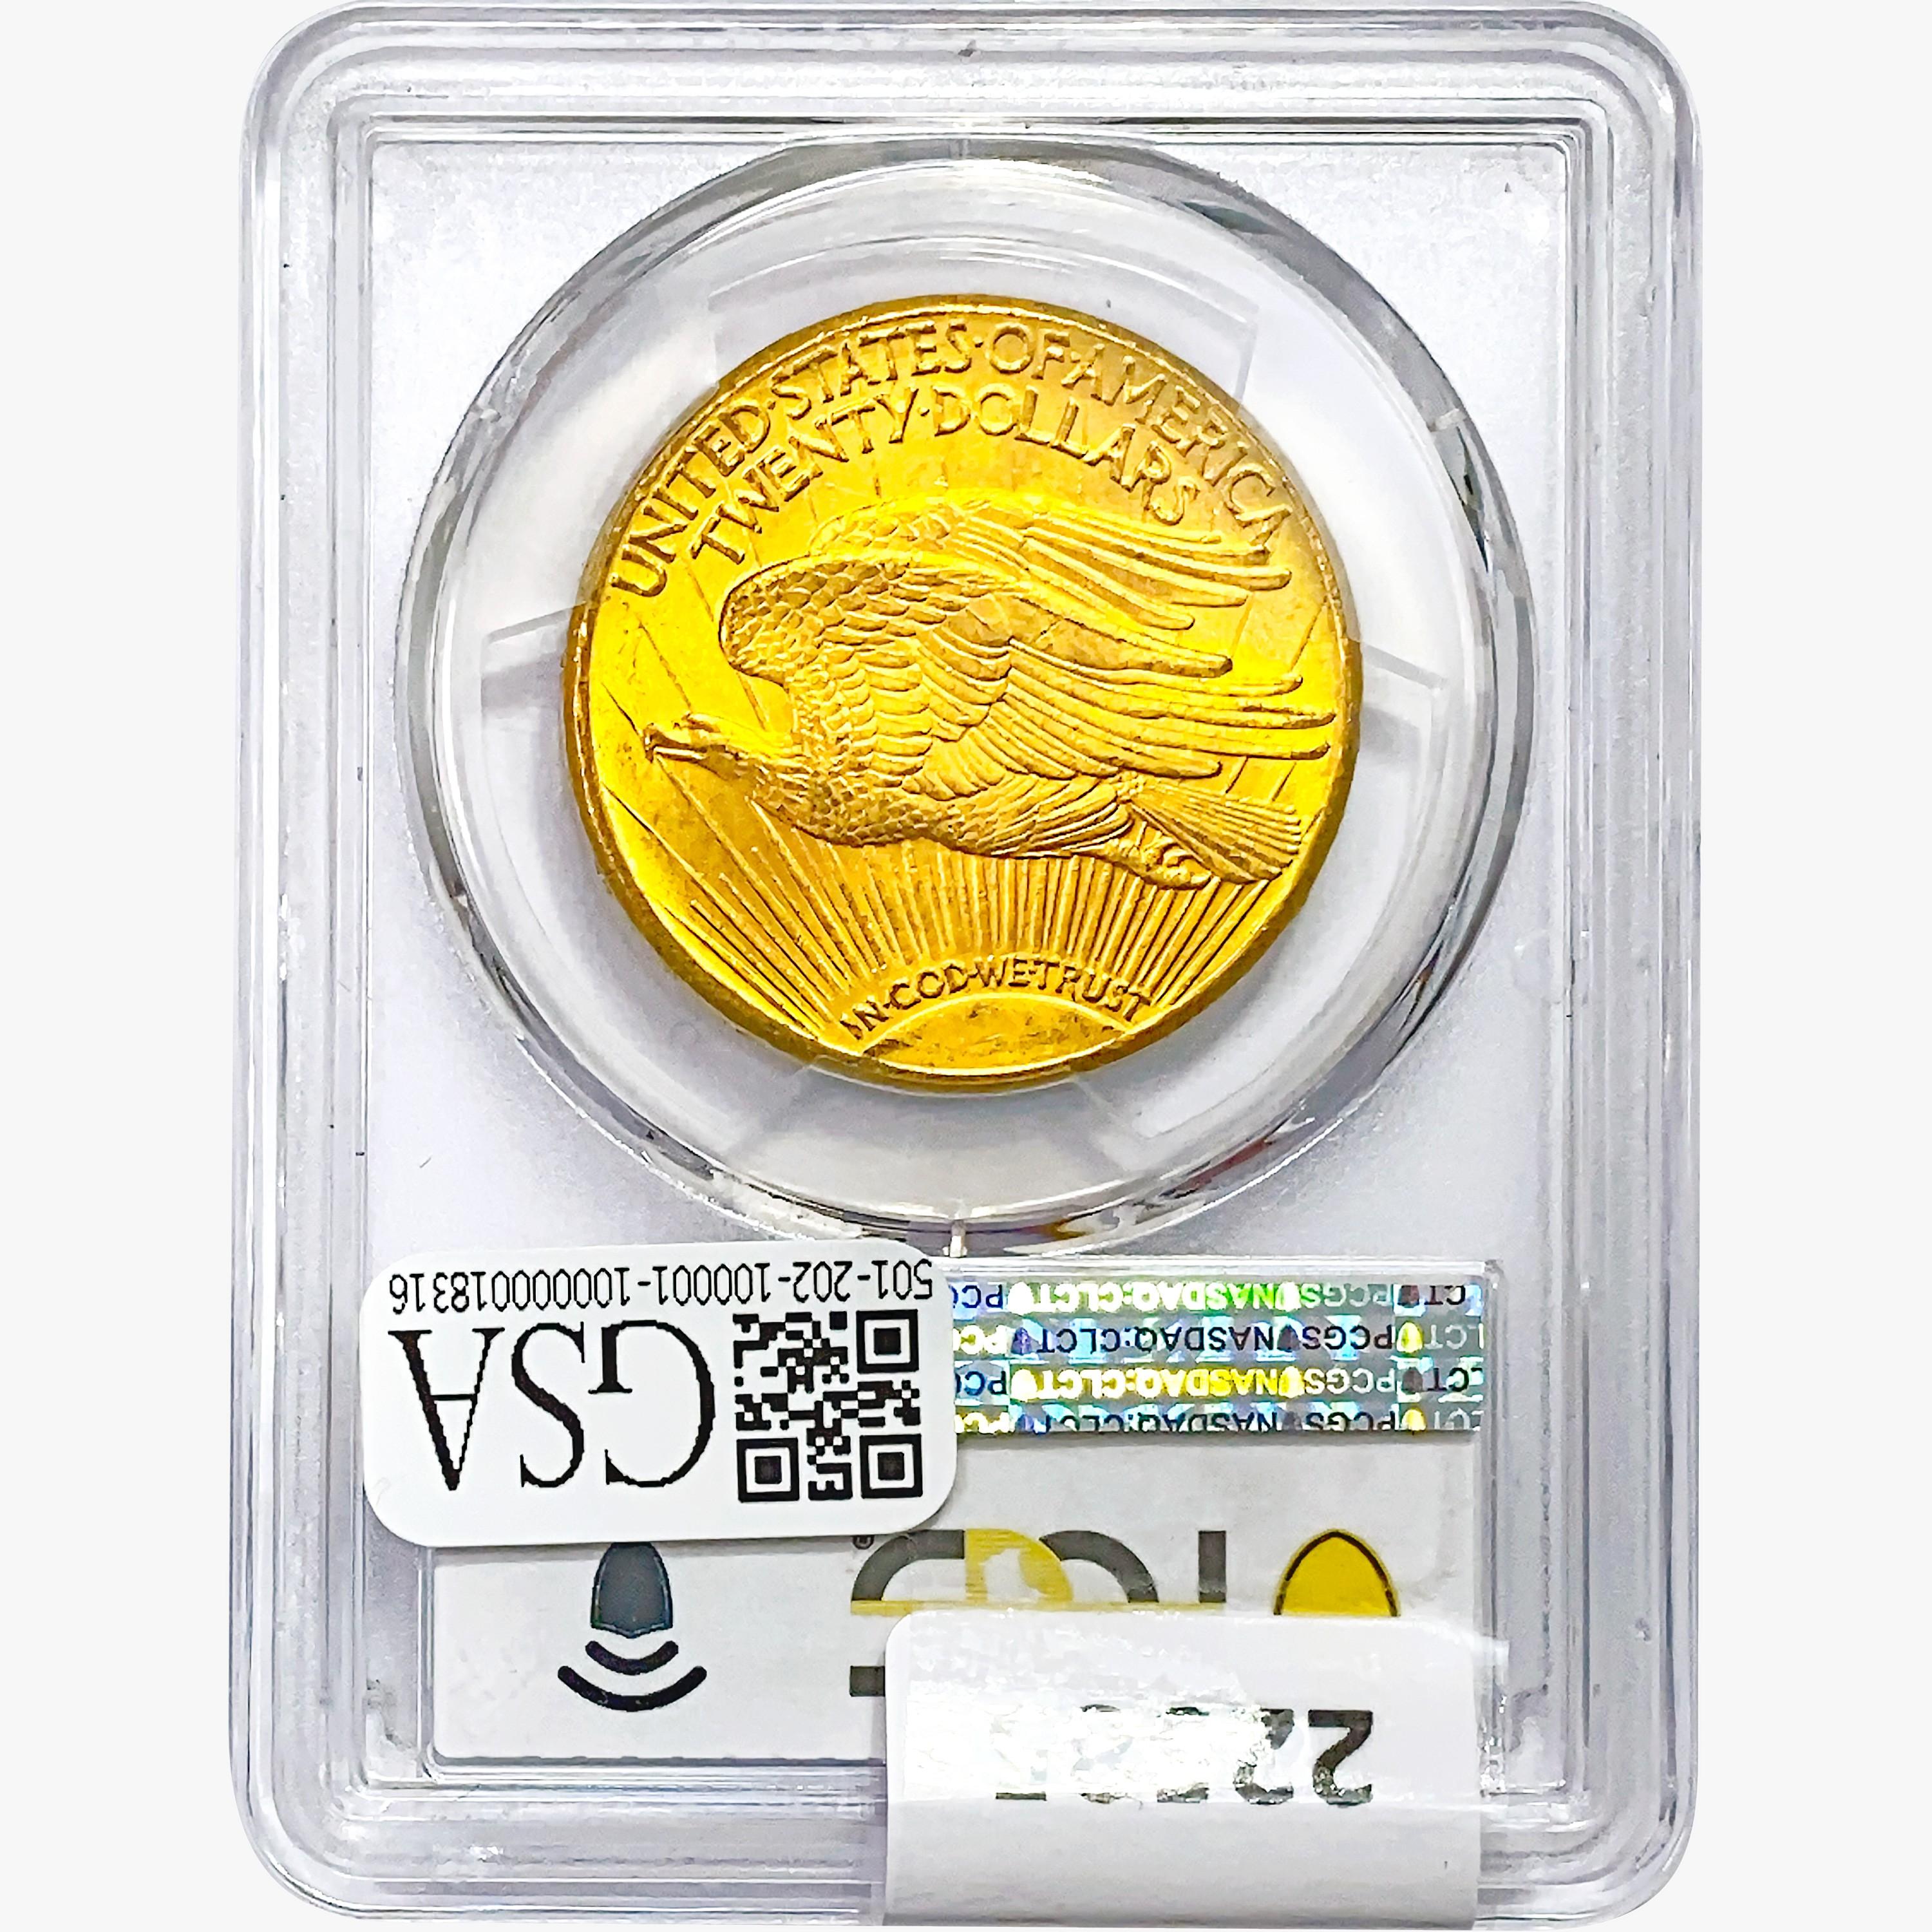 1911-D $20 Gold Double Eagle PCGS MS64